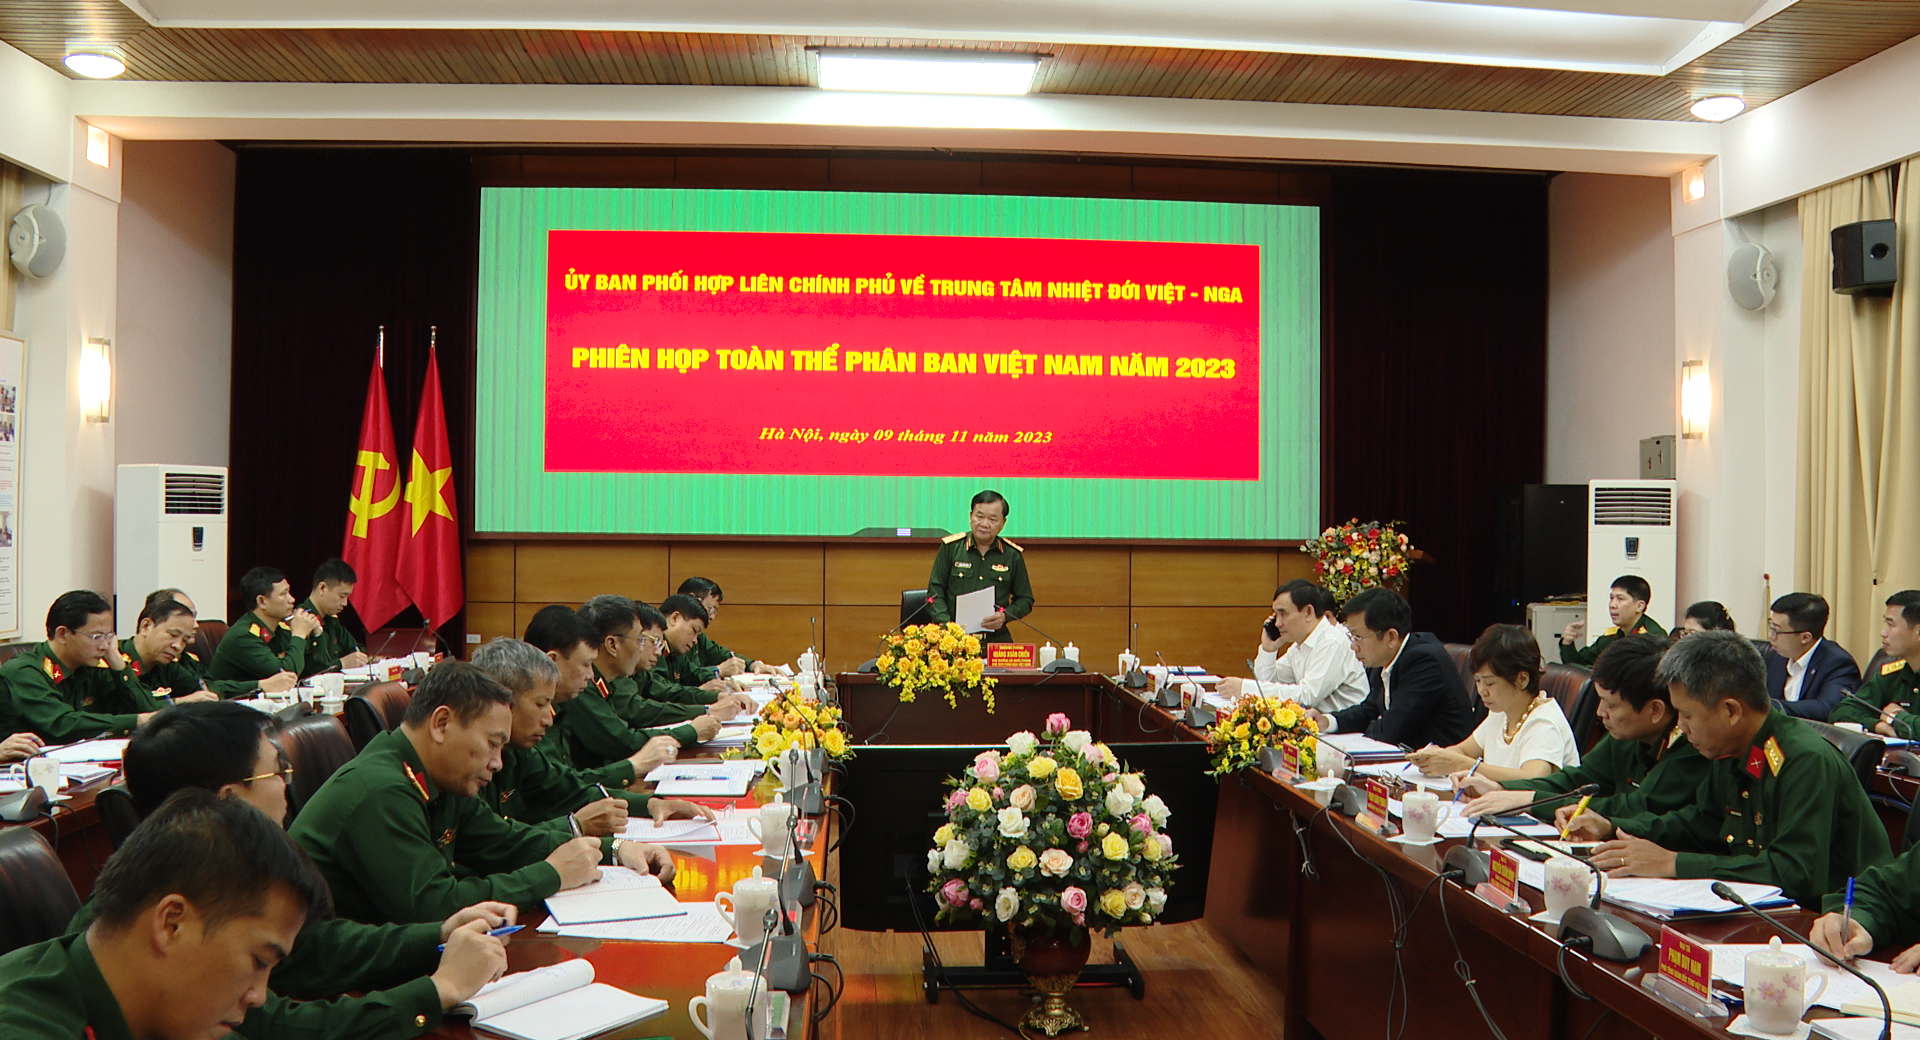 Phiên họp toàn thể Phân ban Việt Nam trong Ủy ban phối hợp liên Chính phủ về Trung tâm Nhiệt đới Việt - Nga 